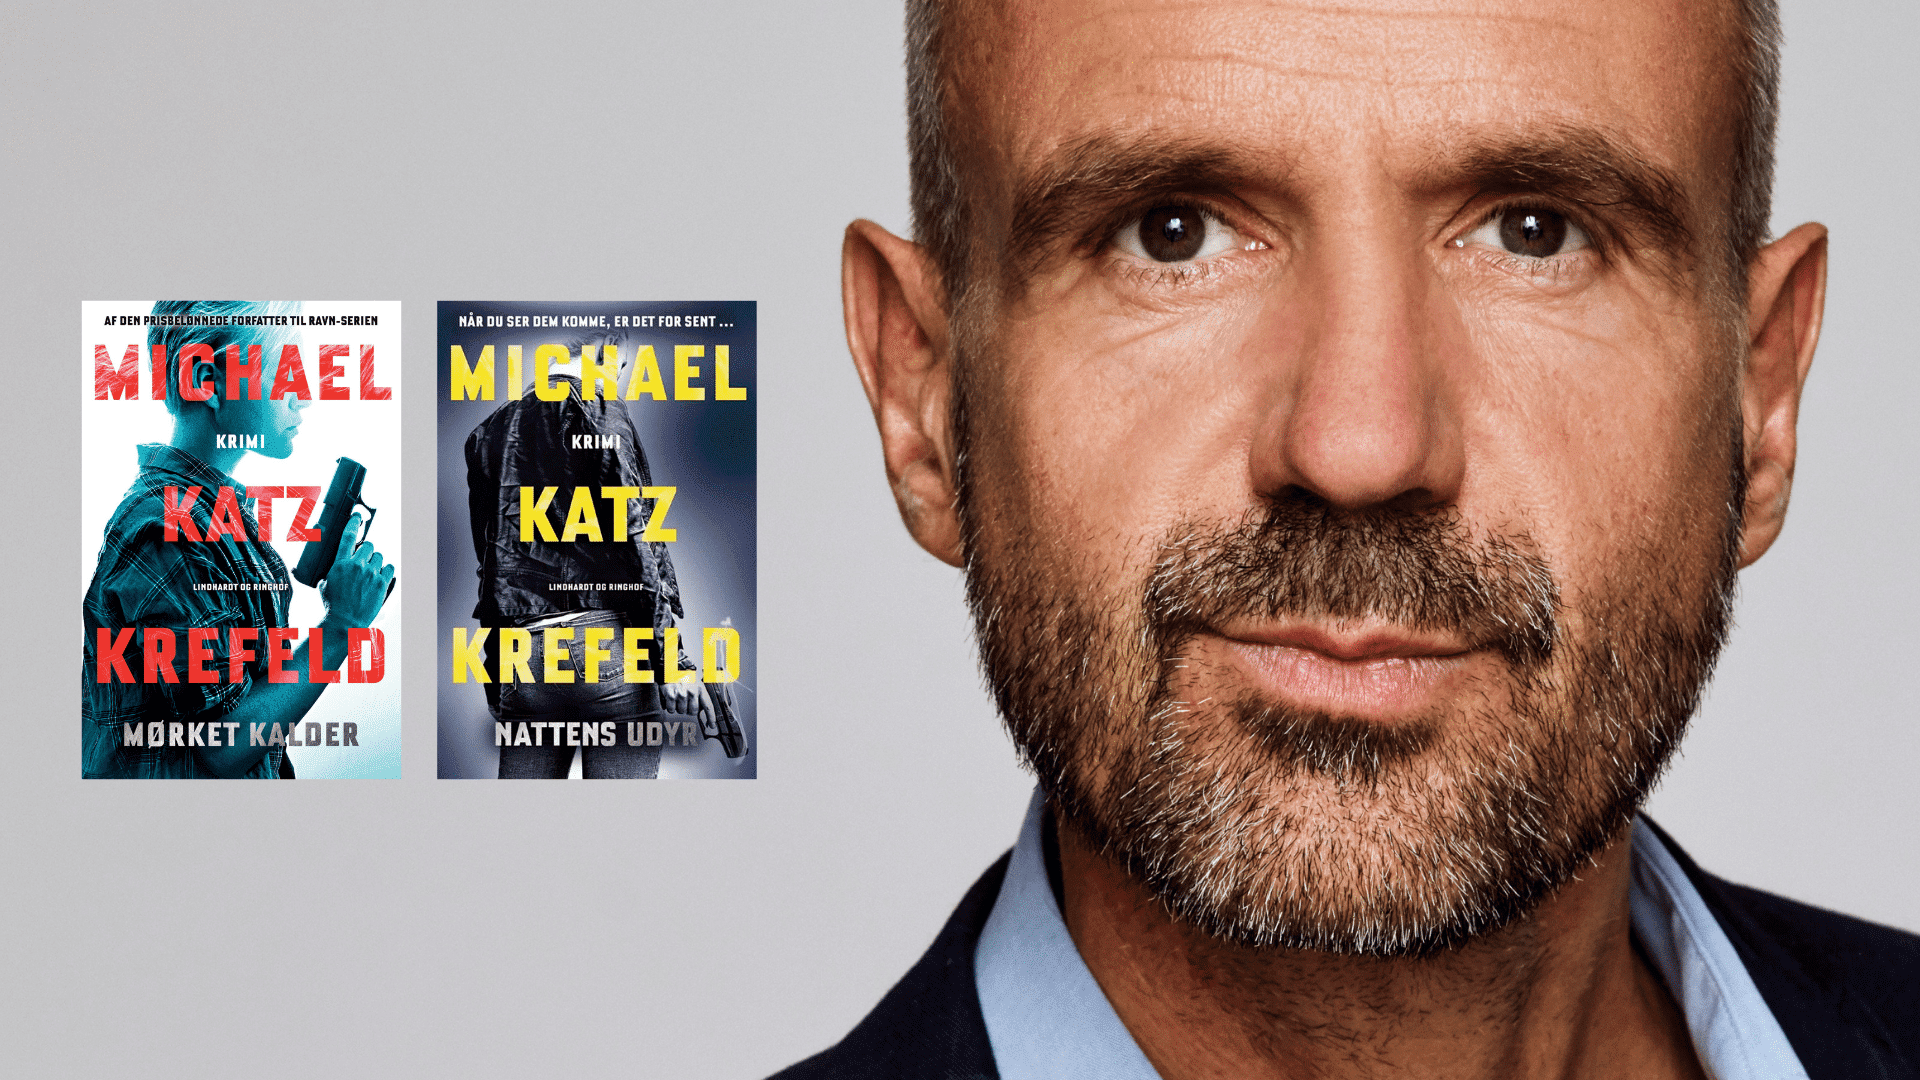 Michael Katz Krefeld, Ceciilie Mars, krimiserie, bestseller krimi, ravn serien